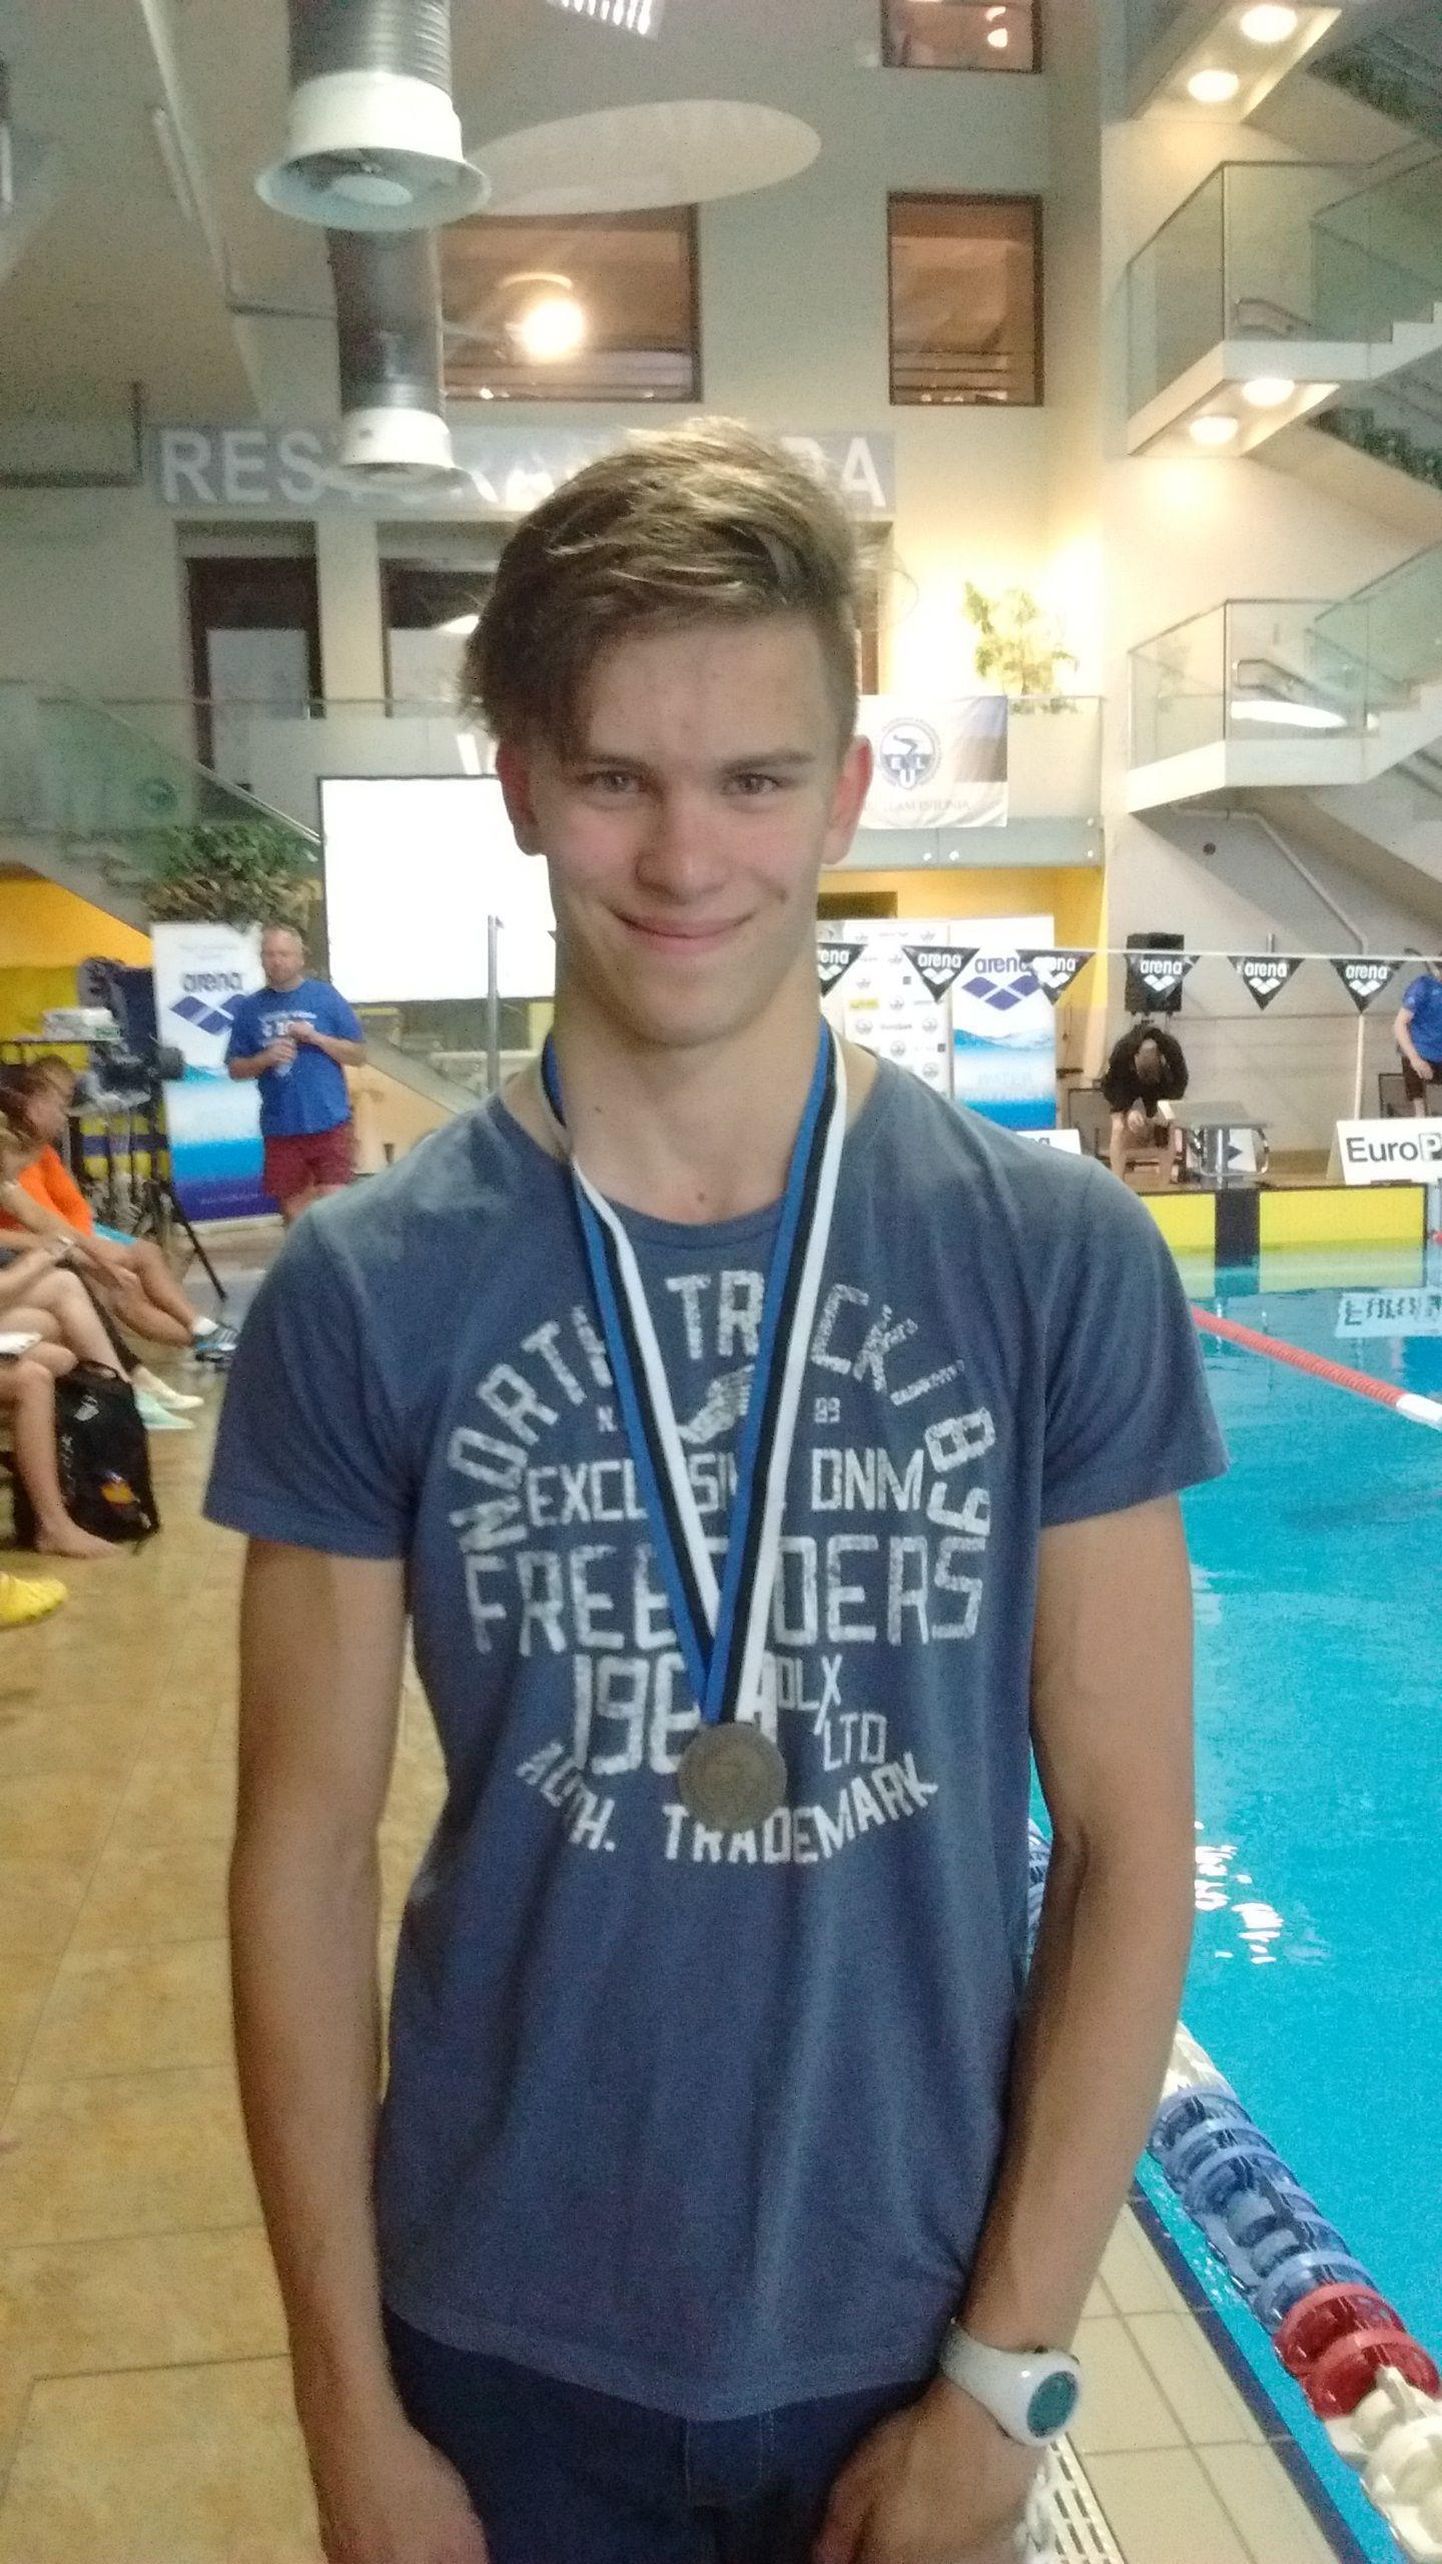 Rando Vainikk parandas spordikooli esivõistlustel 400 meetri vabaltujumises 31 aasta vanust Pärnu rekordit.